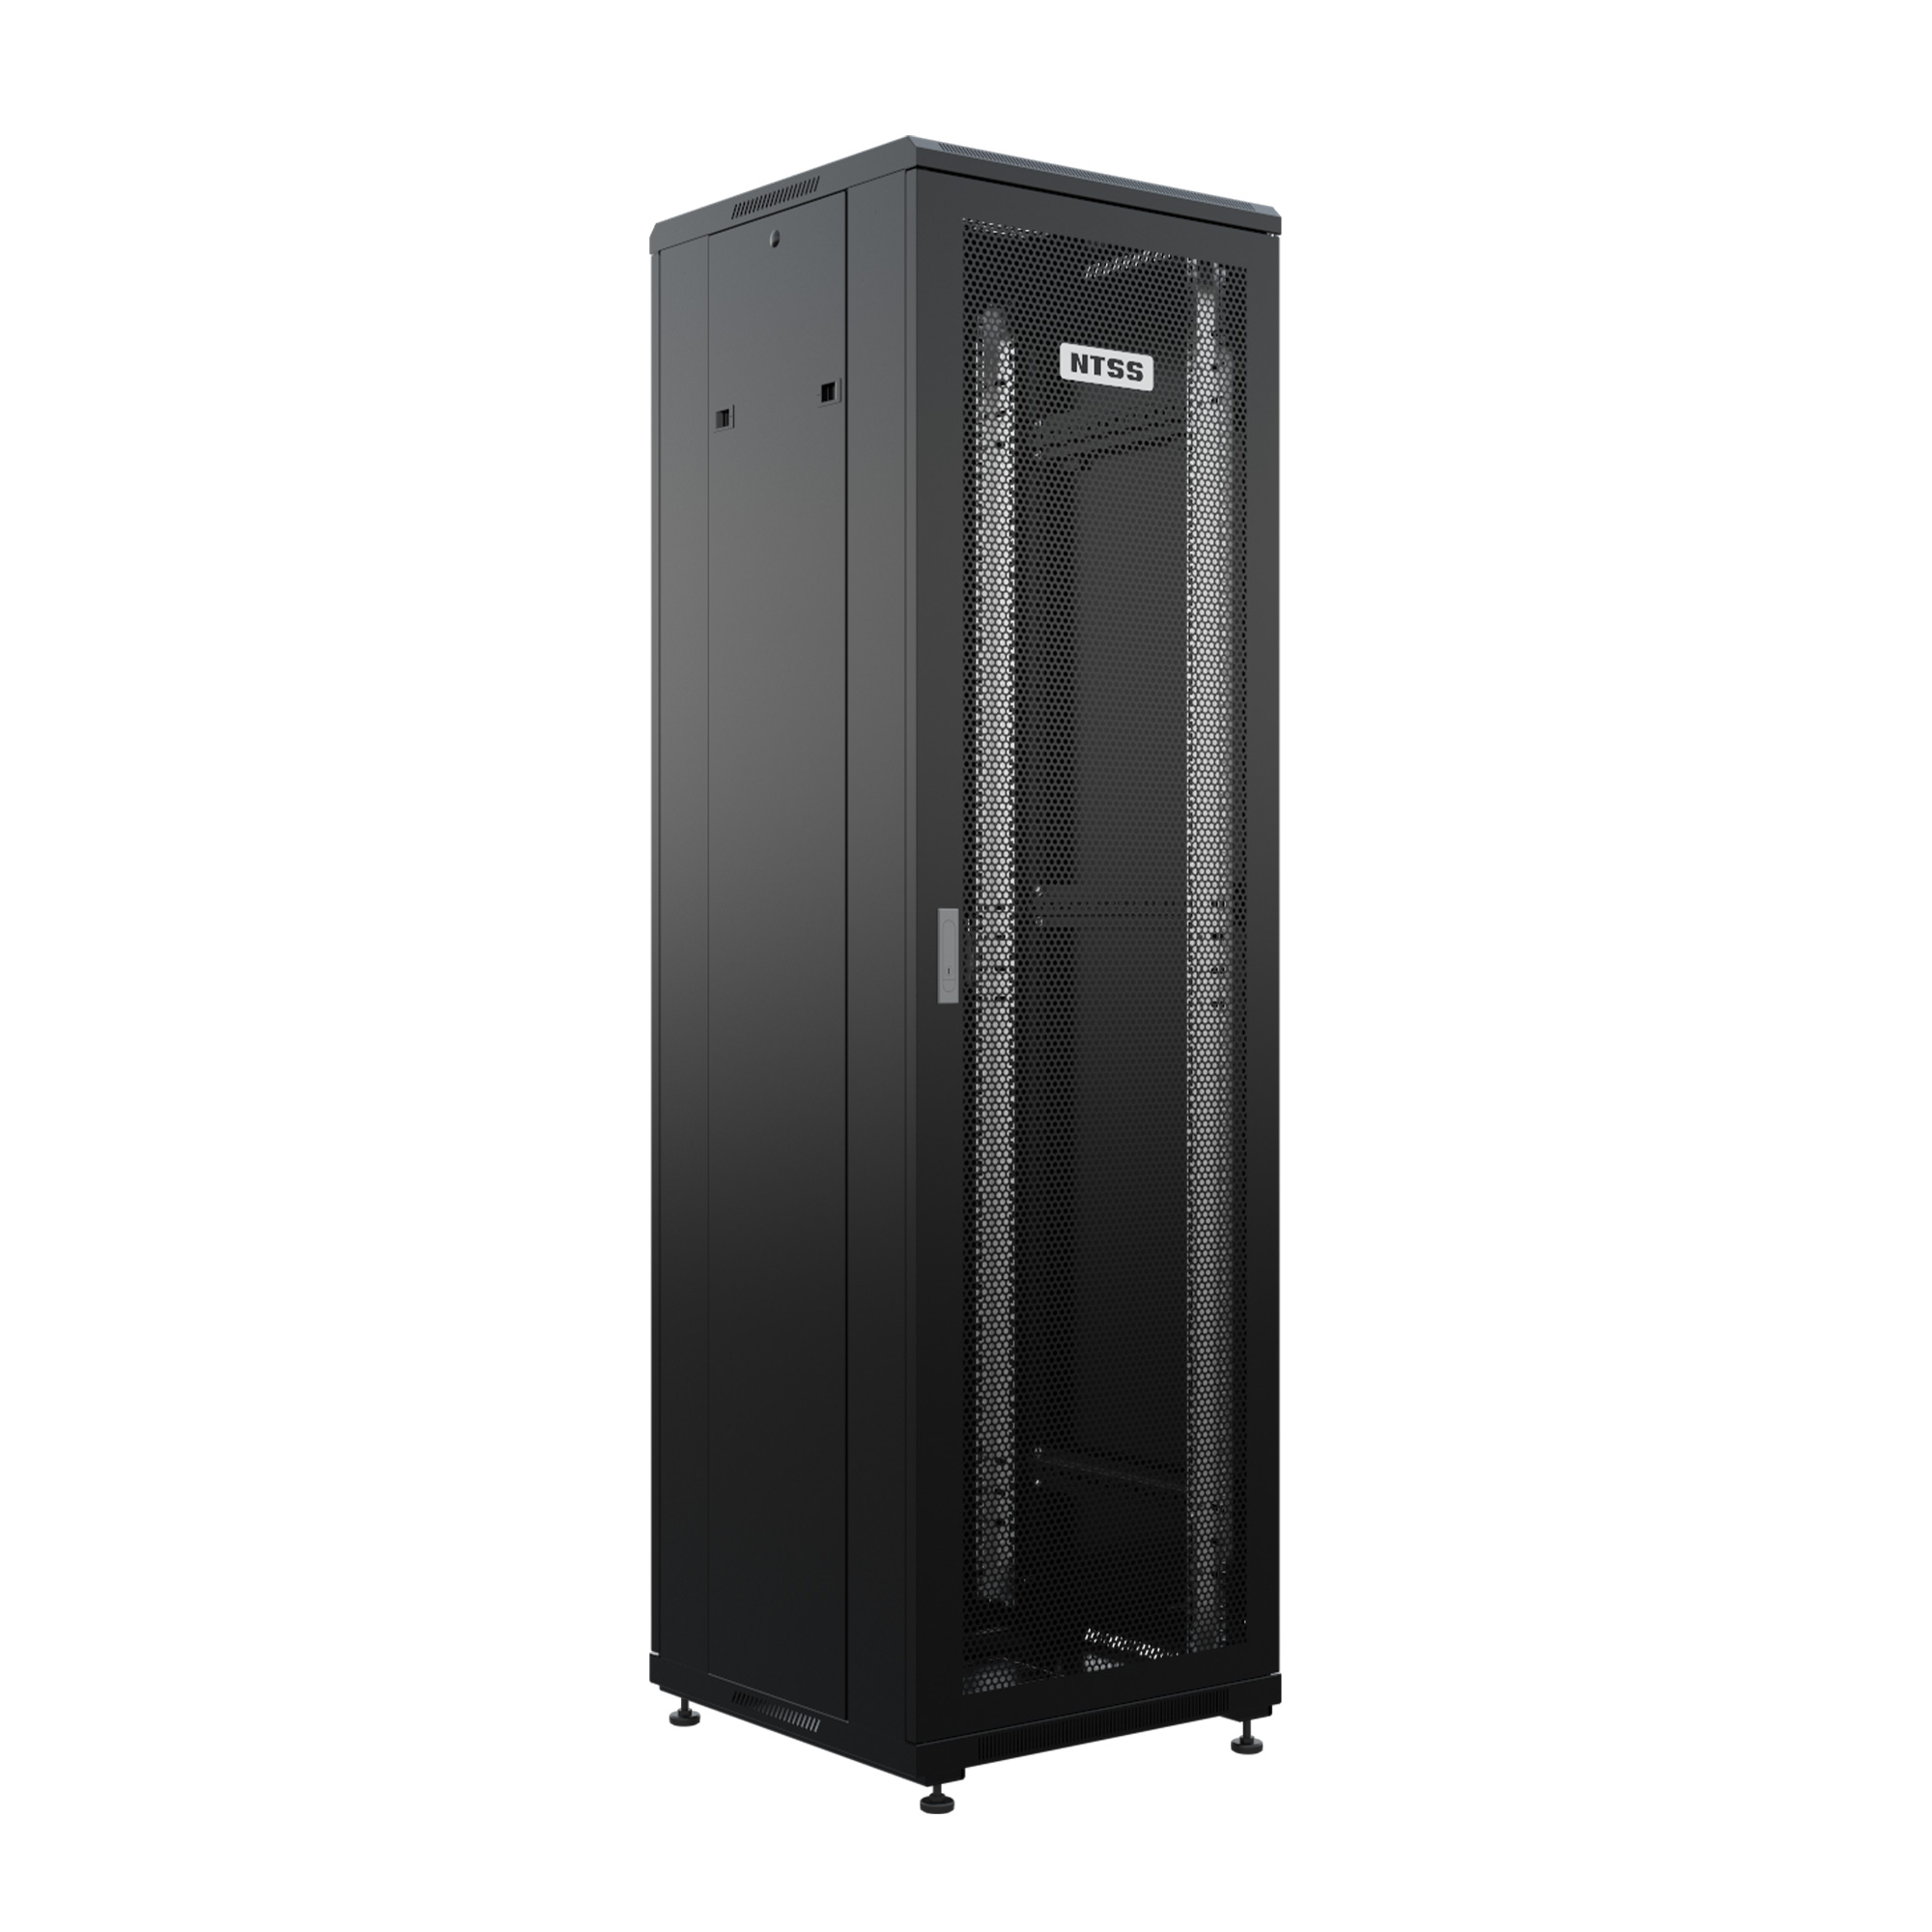 Шкаф напольный универсальный серверный NTSS R 42U 600х600мм, 4 профиля 19, двери перфорированная и перфорированная, боковые стенки съемные, регулируемые опоры, разобранный, черный RAL 9005